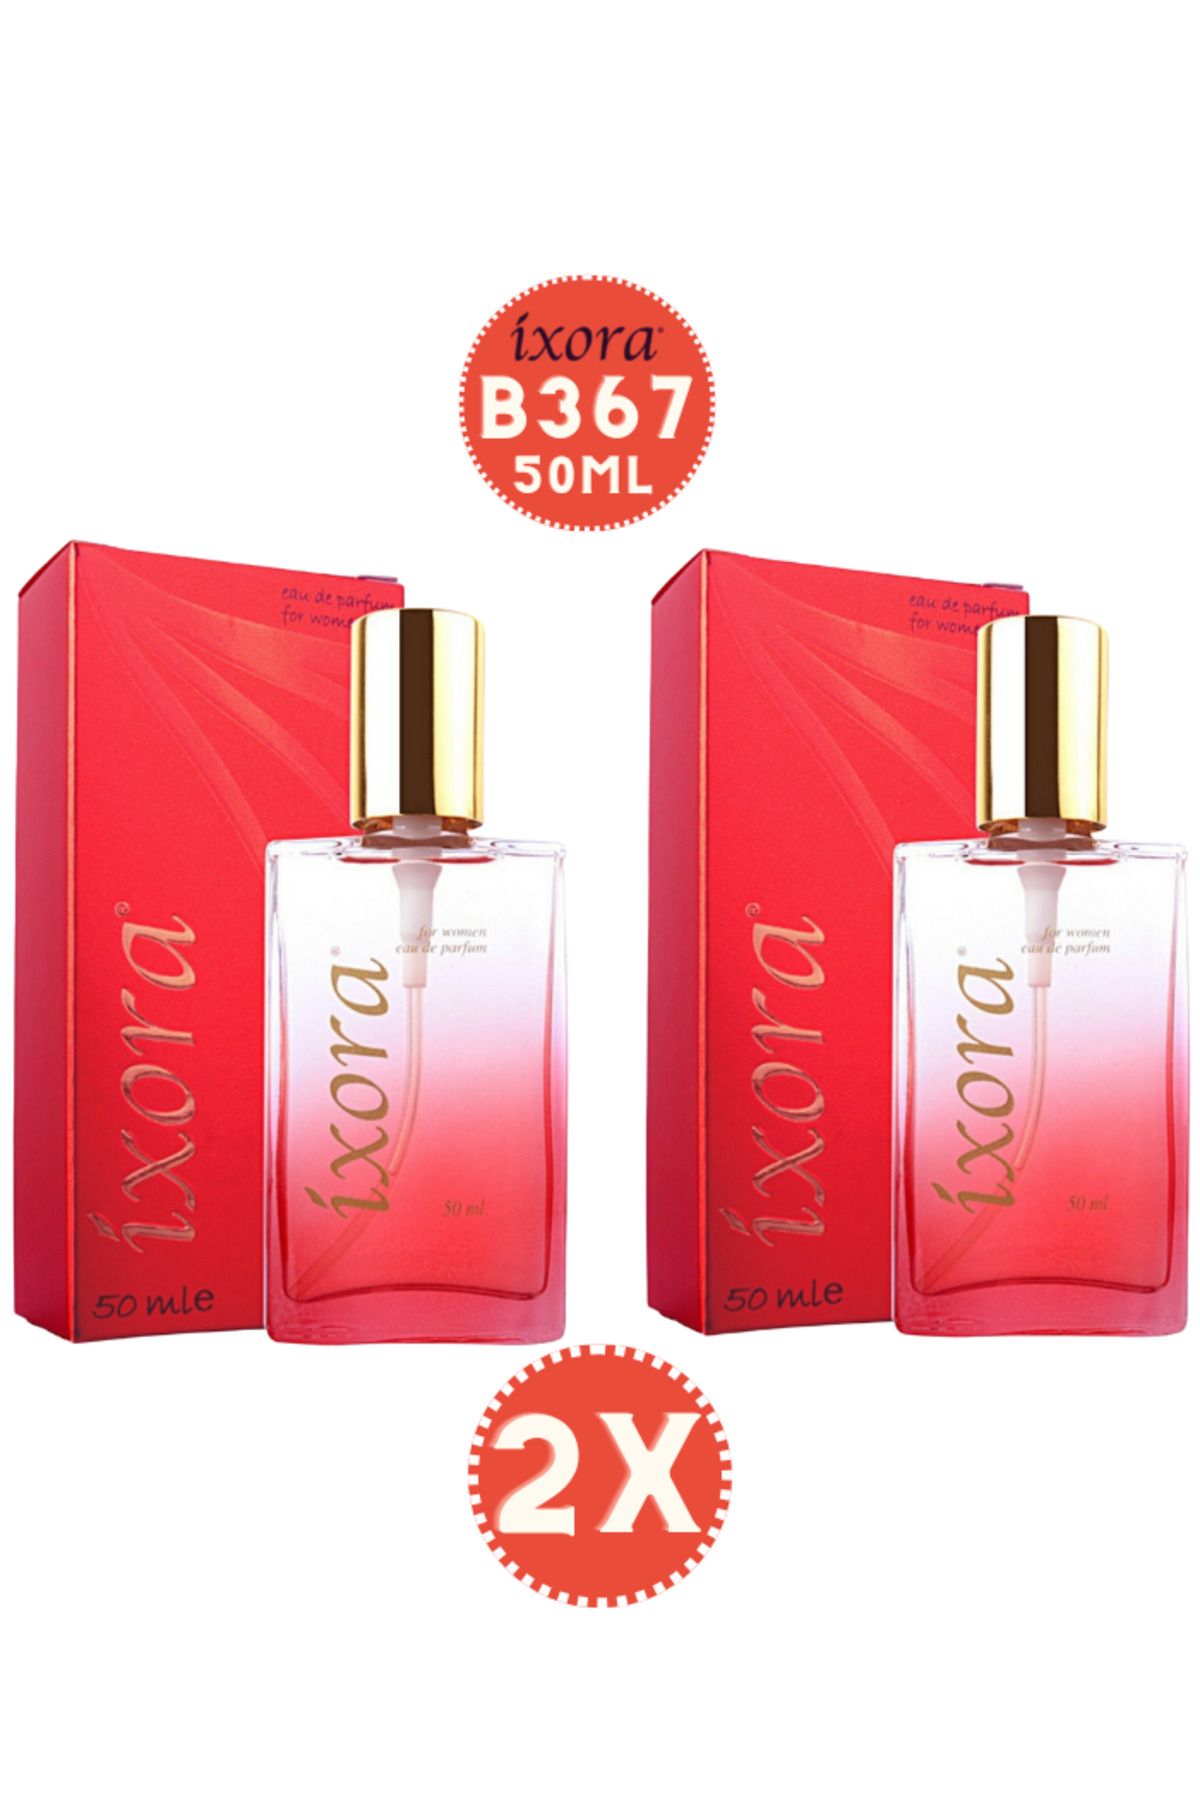 Ixora B367x2 (2 adet ) Kadın Parfüm Esprit 50 ml Edp